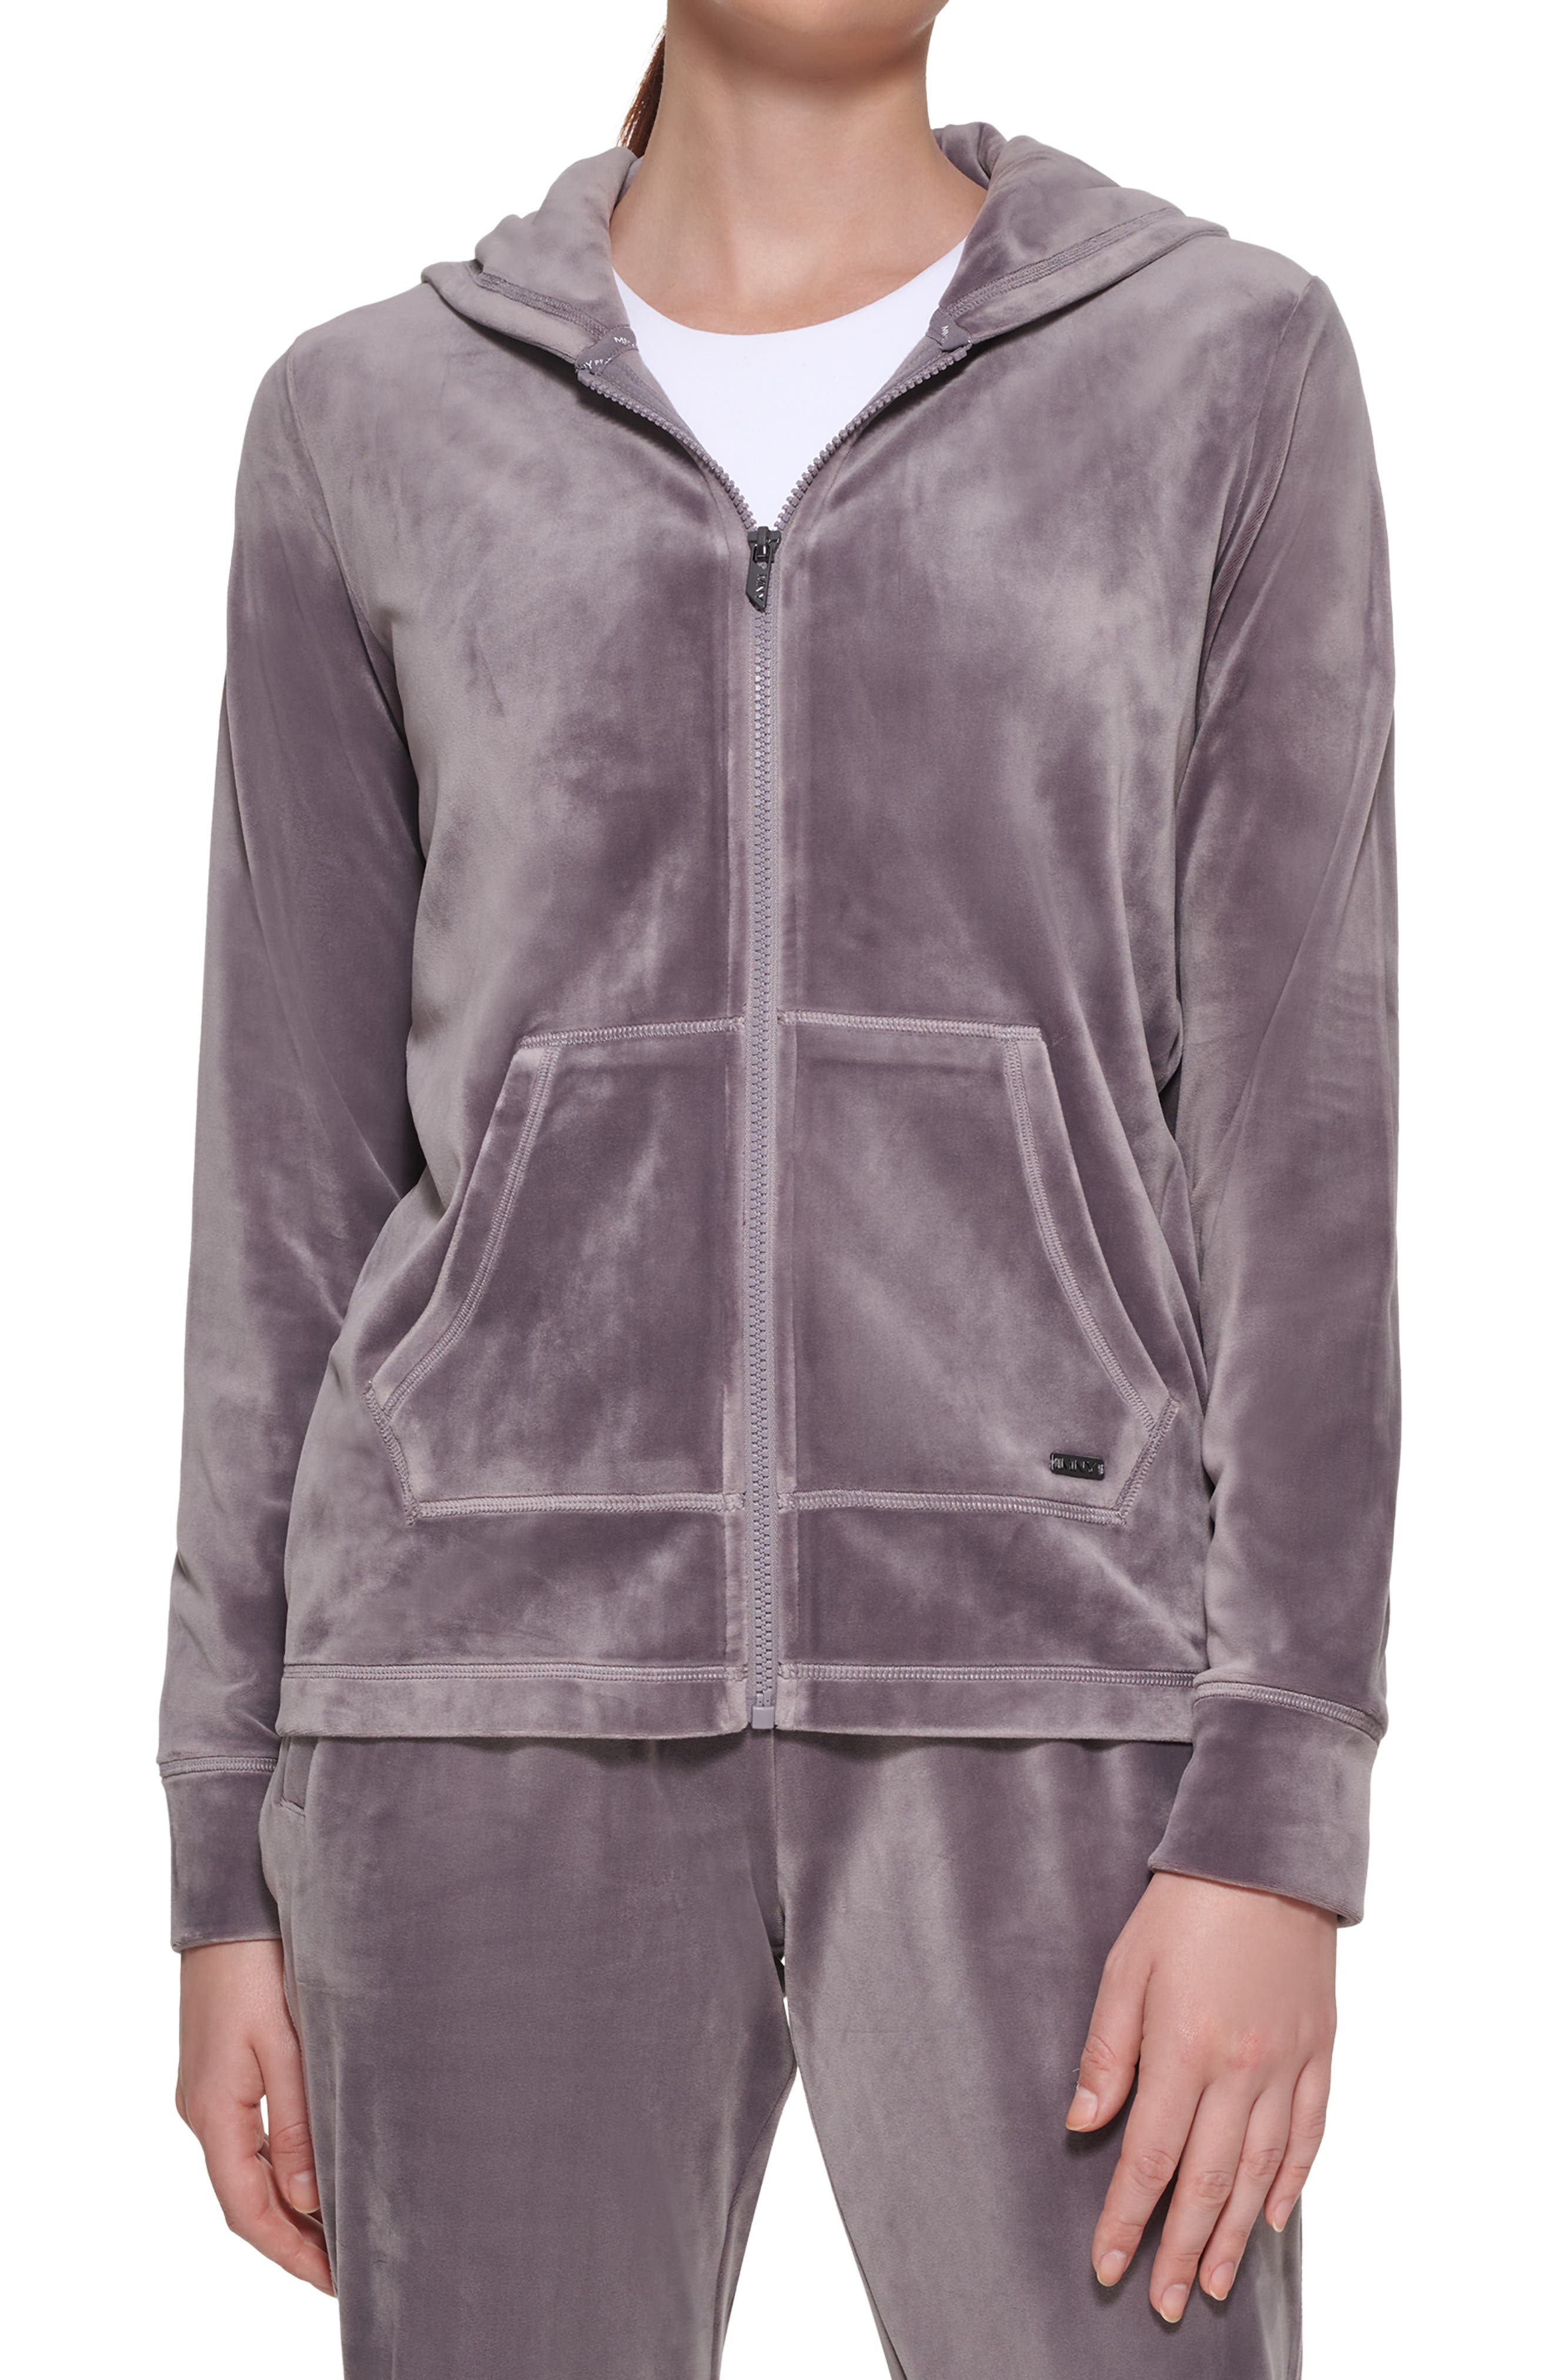 Grey LAST ONES 0158 Ladies Zip Jacket Hoodie Activewear Sports Loungewear 